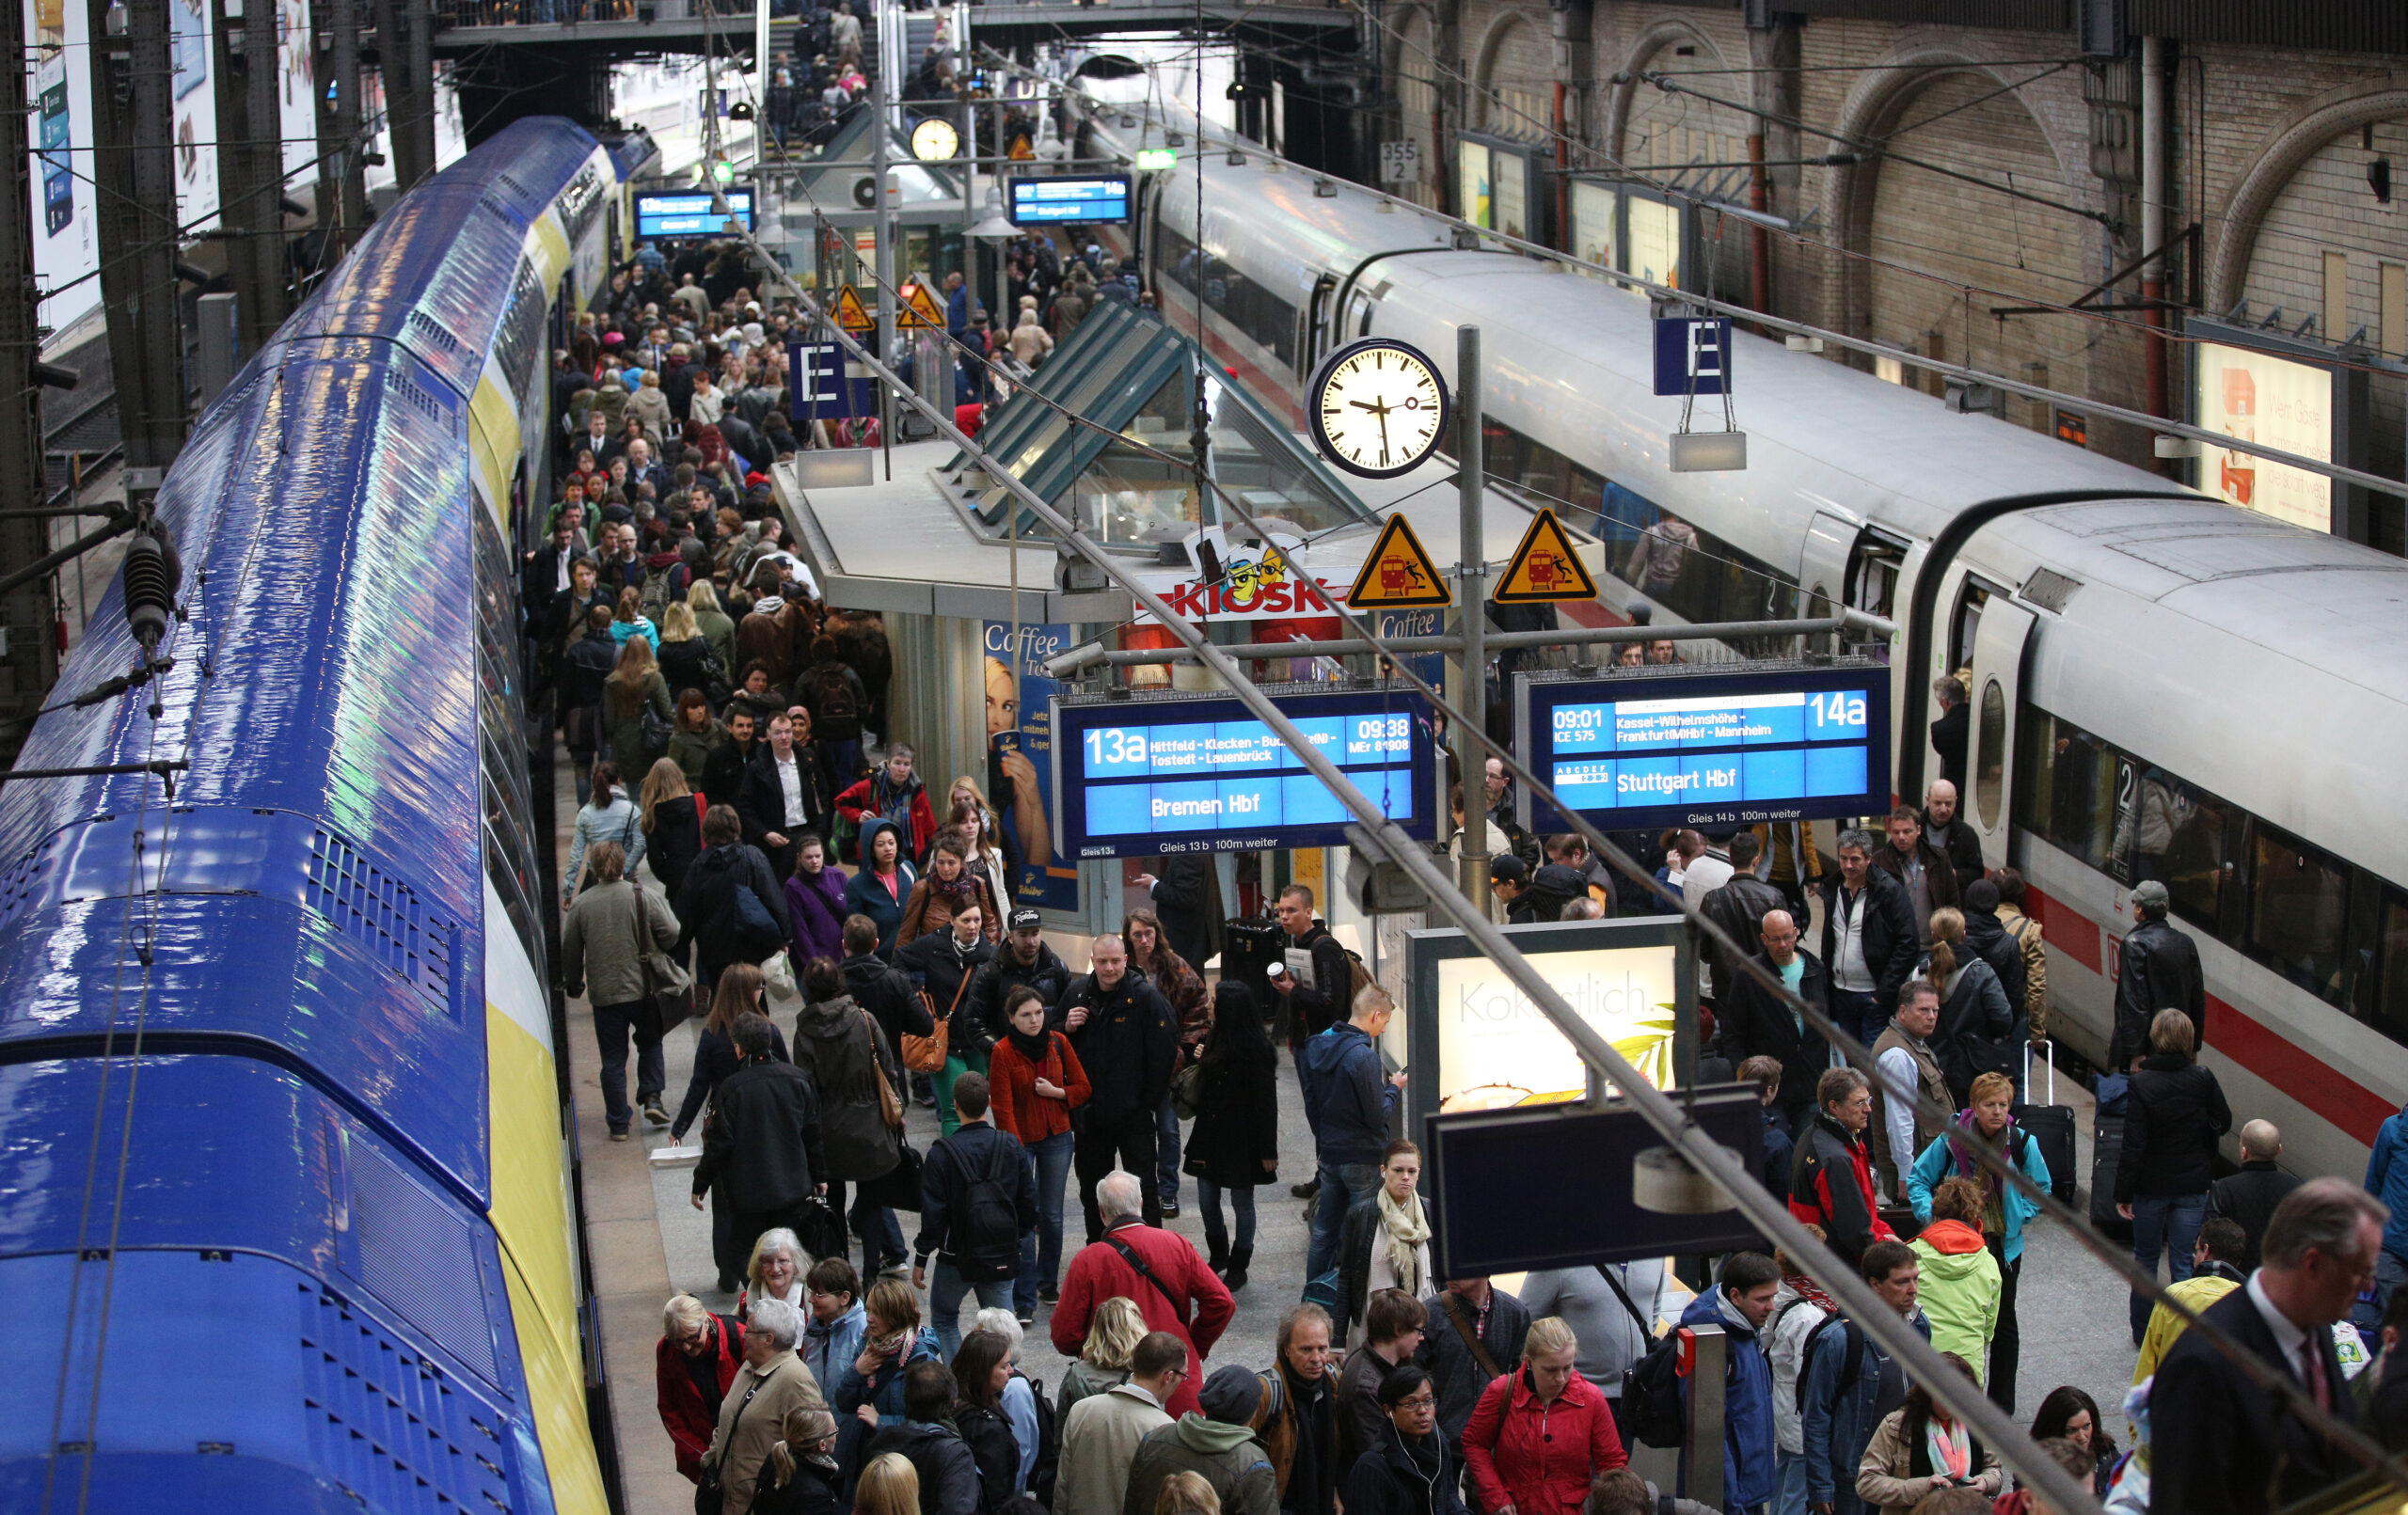 Hunderttausende Menschen pendeln täglich nach Hamburg – viele über den Hauptbahnhof. Wie soll hier die Mobilitätswende klappen?